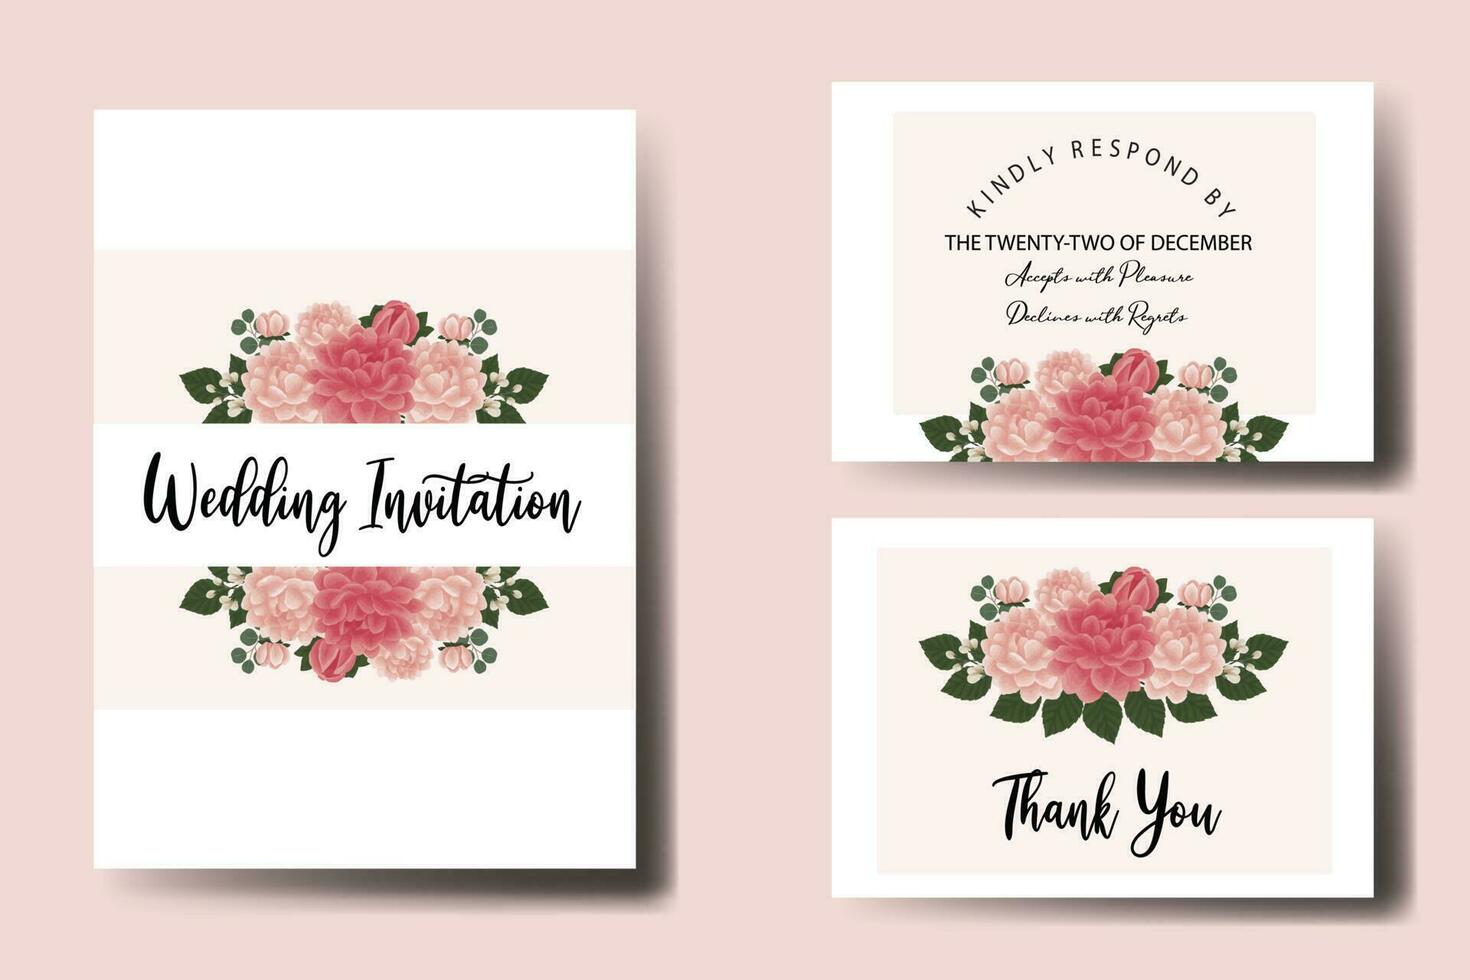 Boda invitación marco colocar, floral acuarela digital mano dibujado dalia flor diseño invitación tarjeta modelo vector